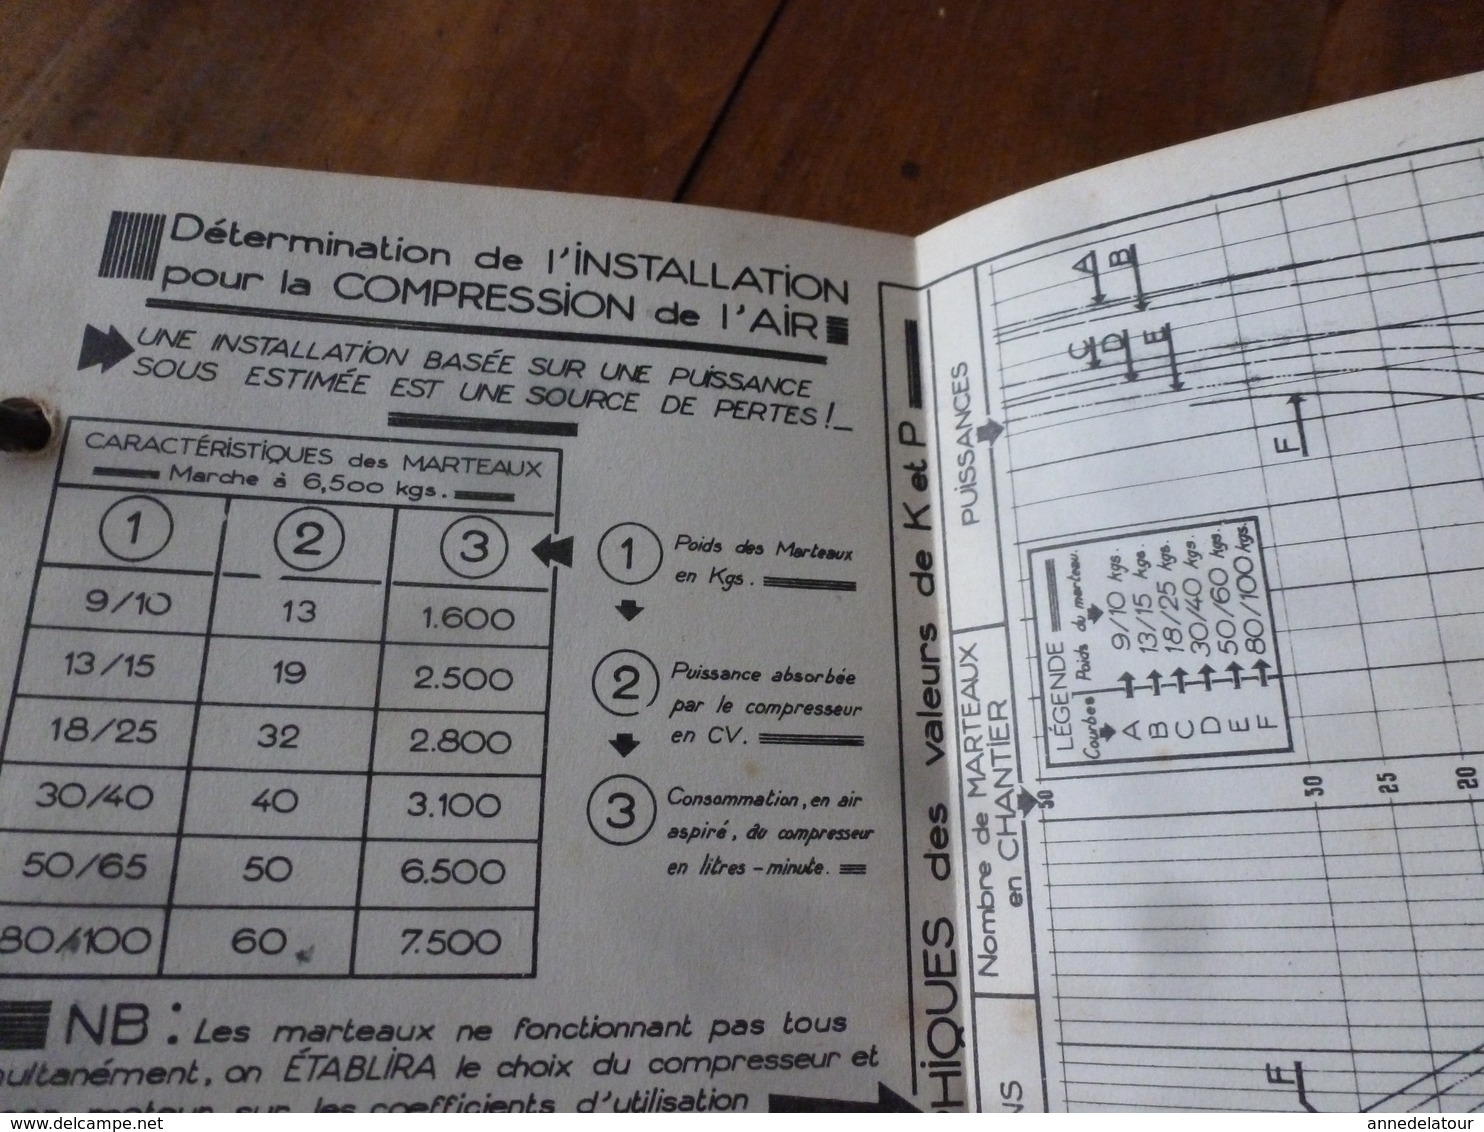 1941 Rare document technique de PERFORATION ET ABATTAGE DES ROCHES , édition TEKHNIKOS